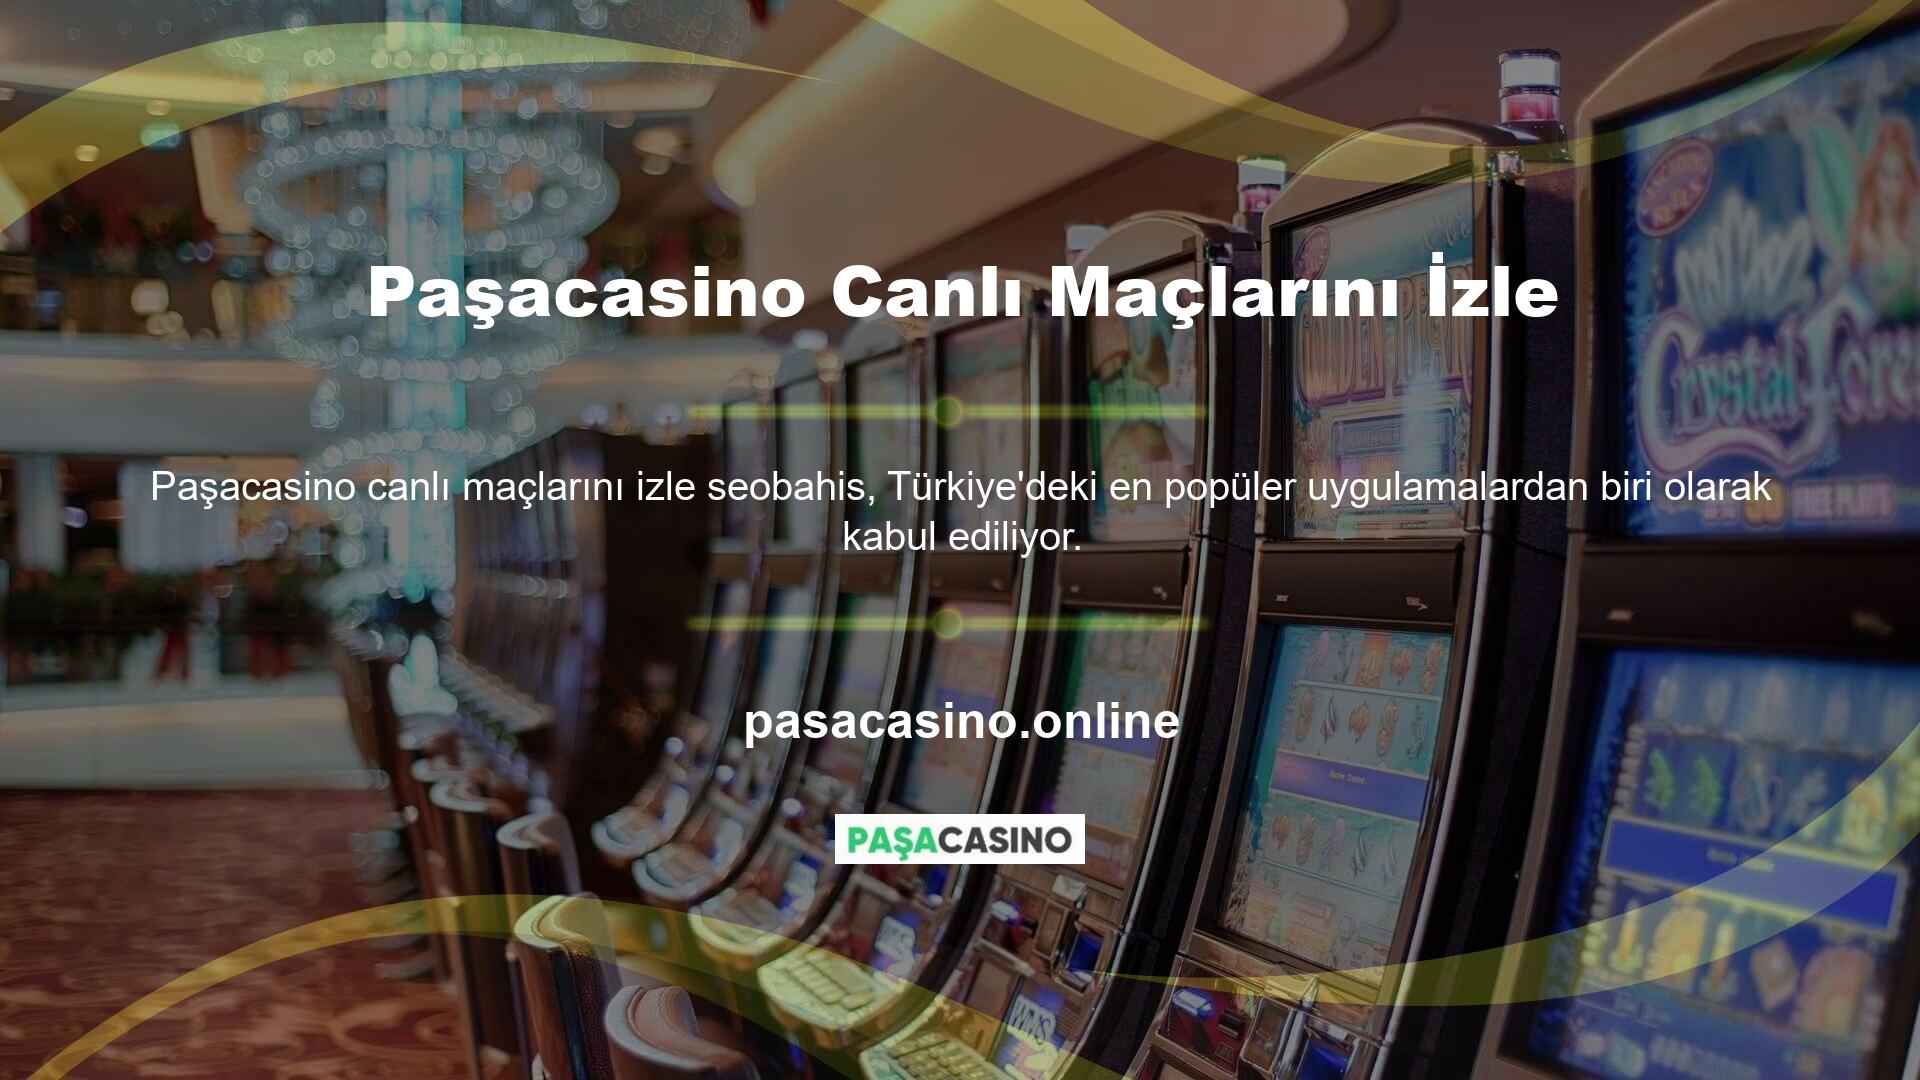 Online casino siteleri Türkiye'de yasa dışı casino siteleri olarak kabul edilmektedir